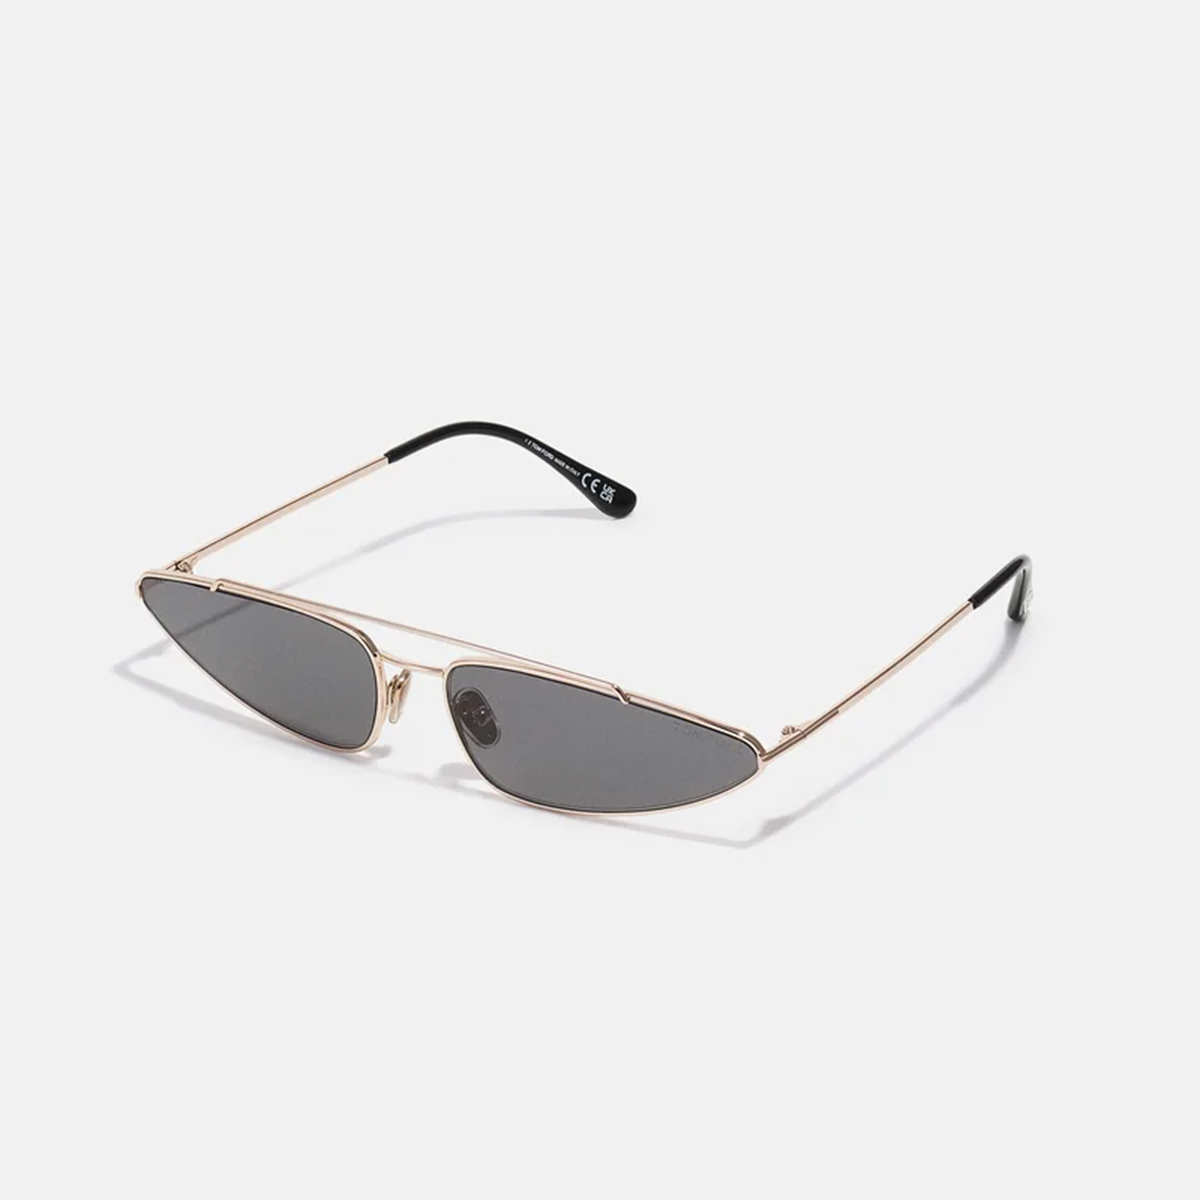 Gafas de sol triangulares de Tom Ford 325 euros